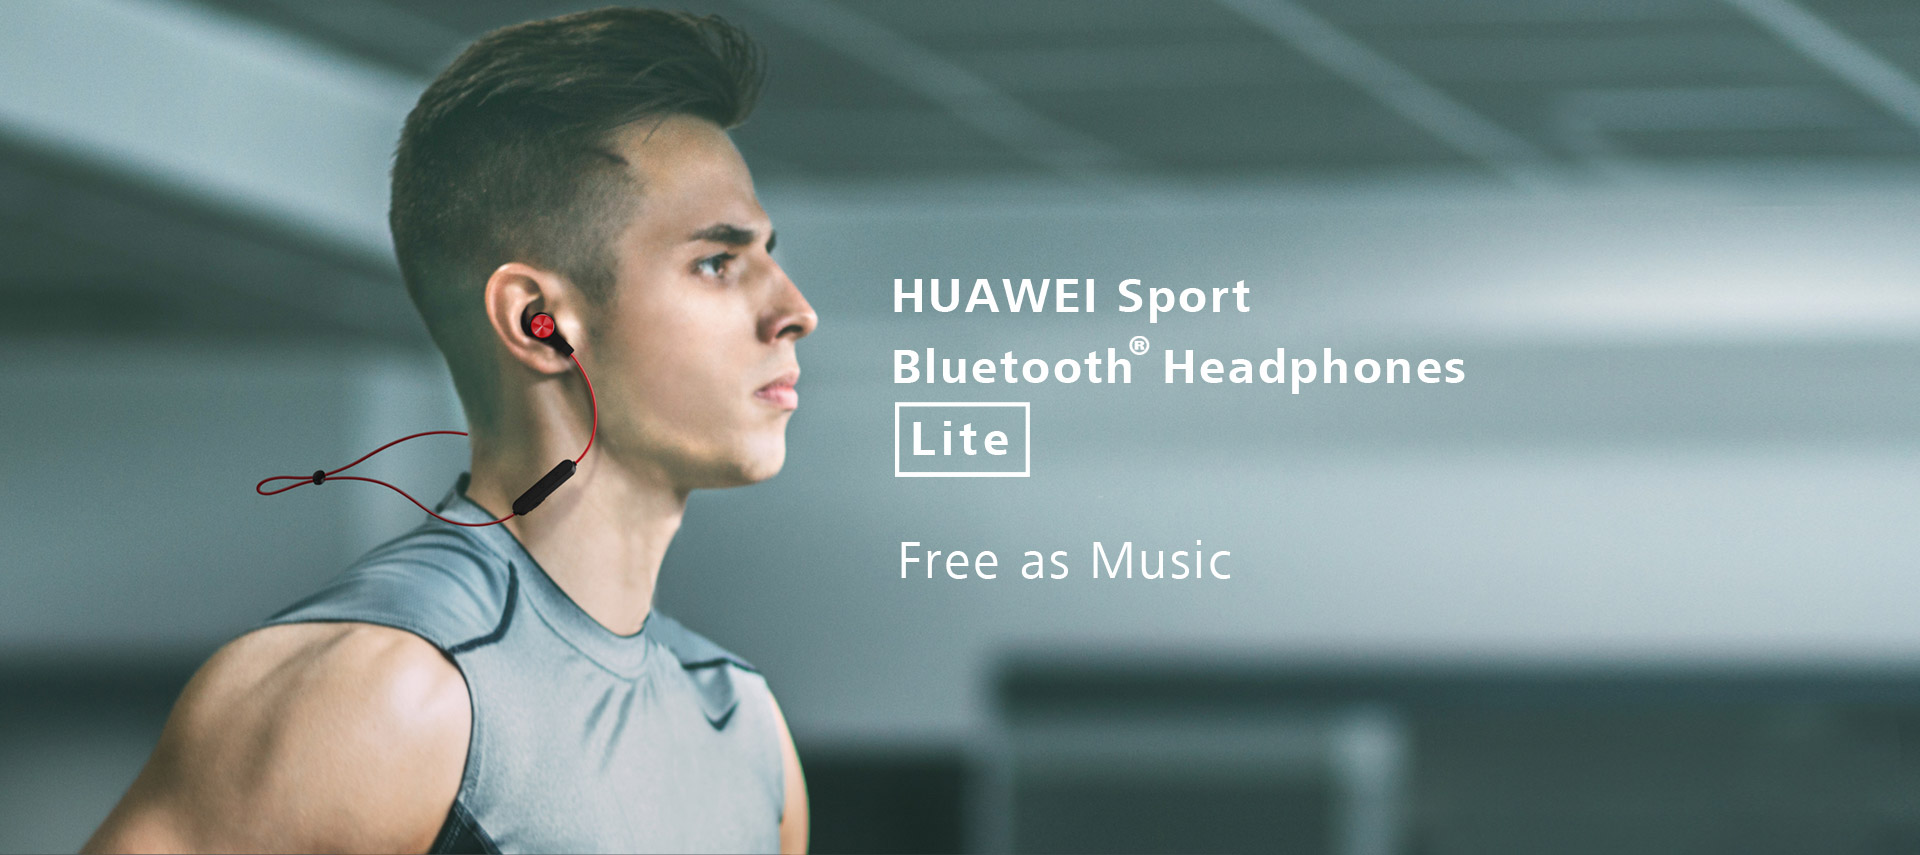 HUAWEI Sport Headphones Lite - HUAWEI Global